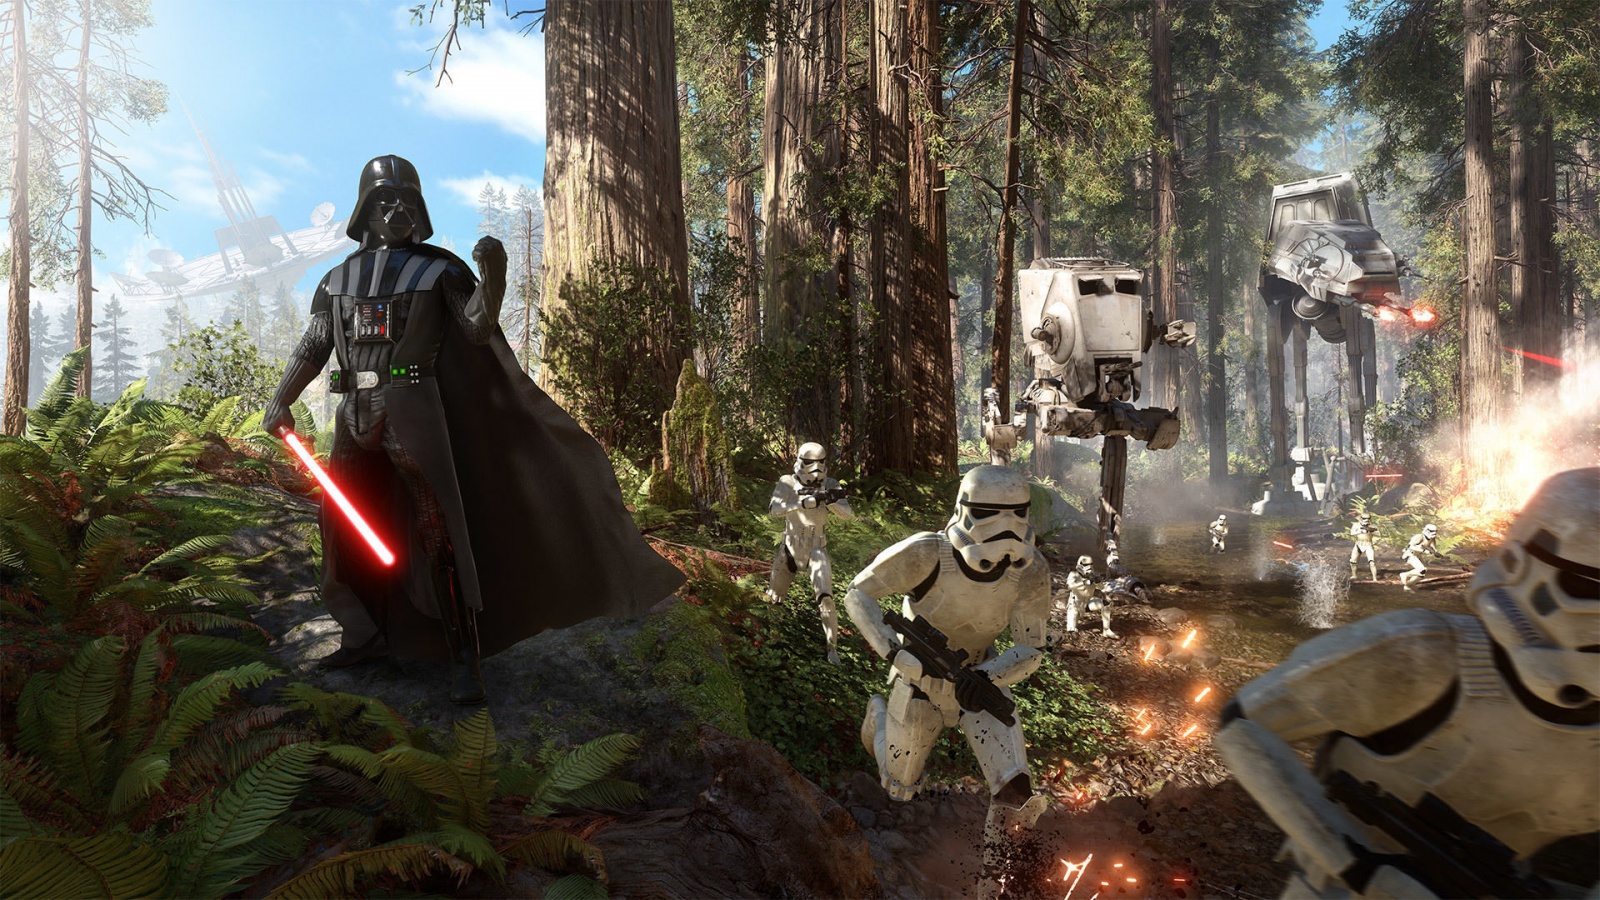 Star Wars Battlefront Darth Vader Wallpaper in jpg format for free download